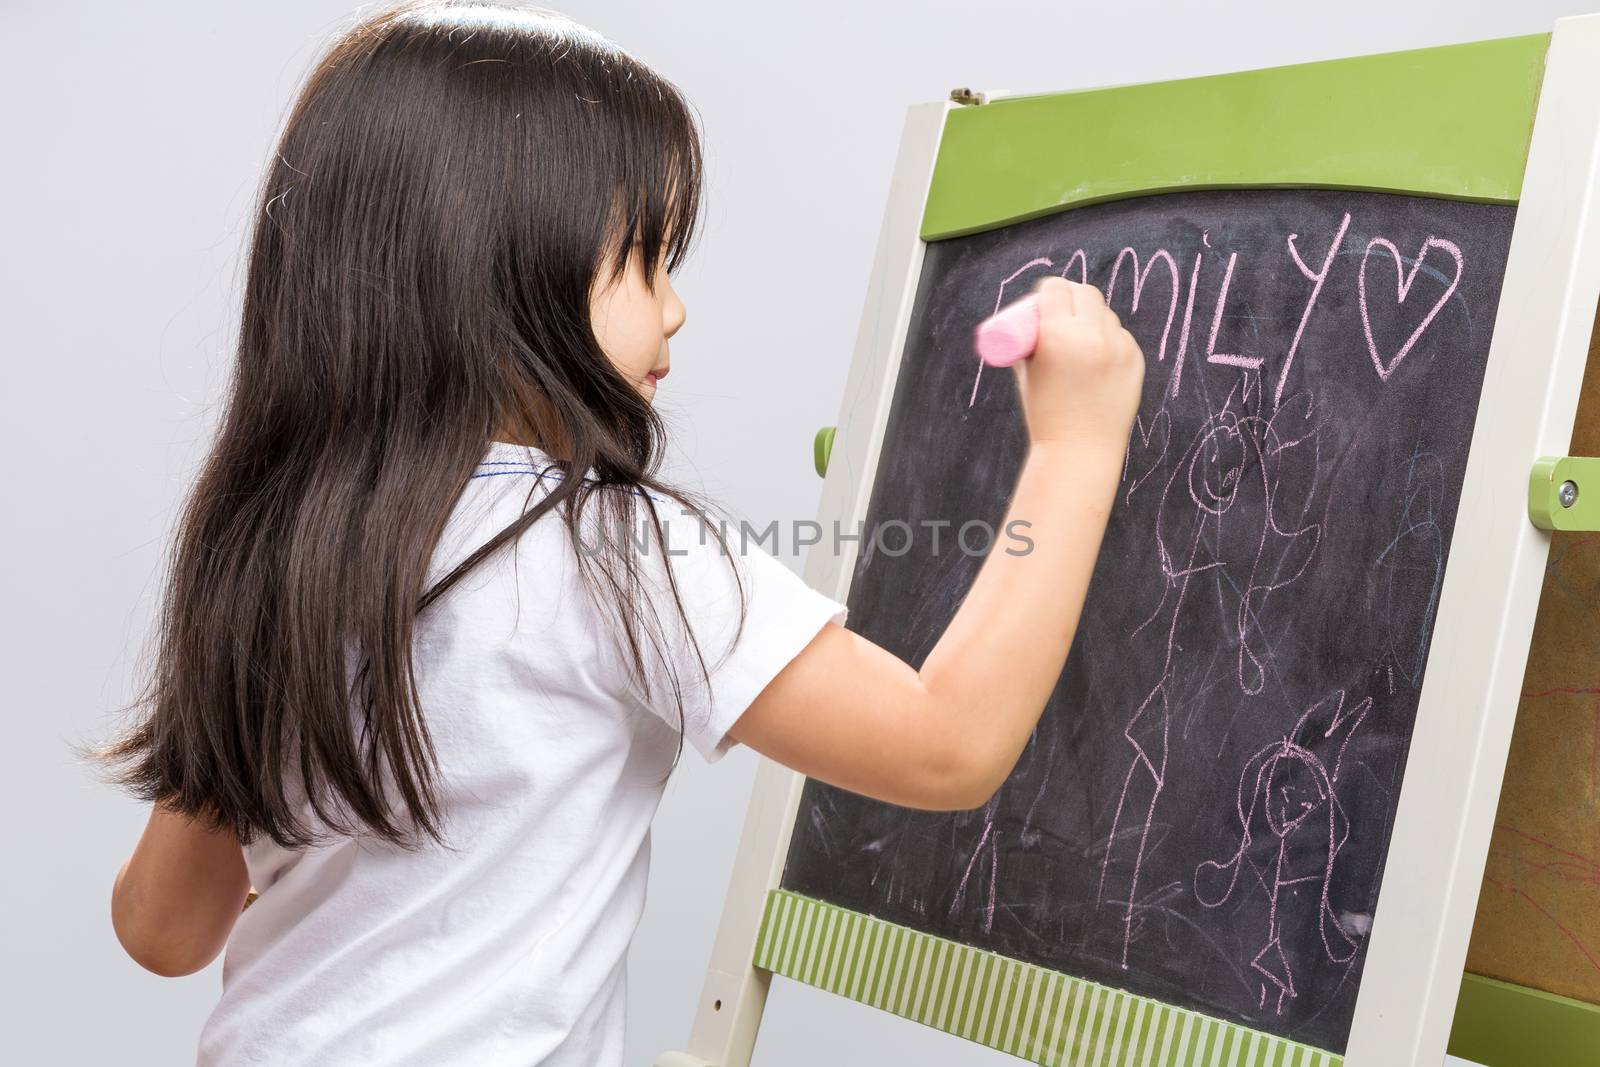 Little kid writing something on blackboard studio isolated.